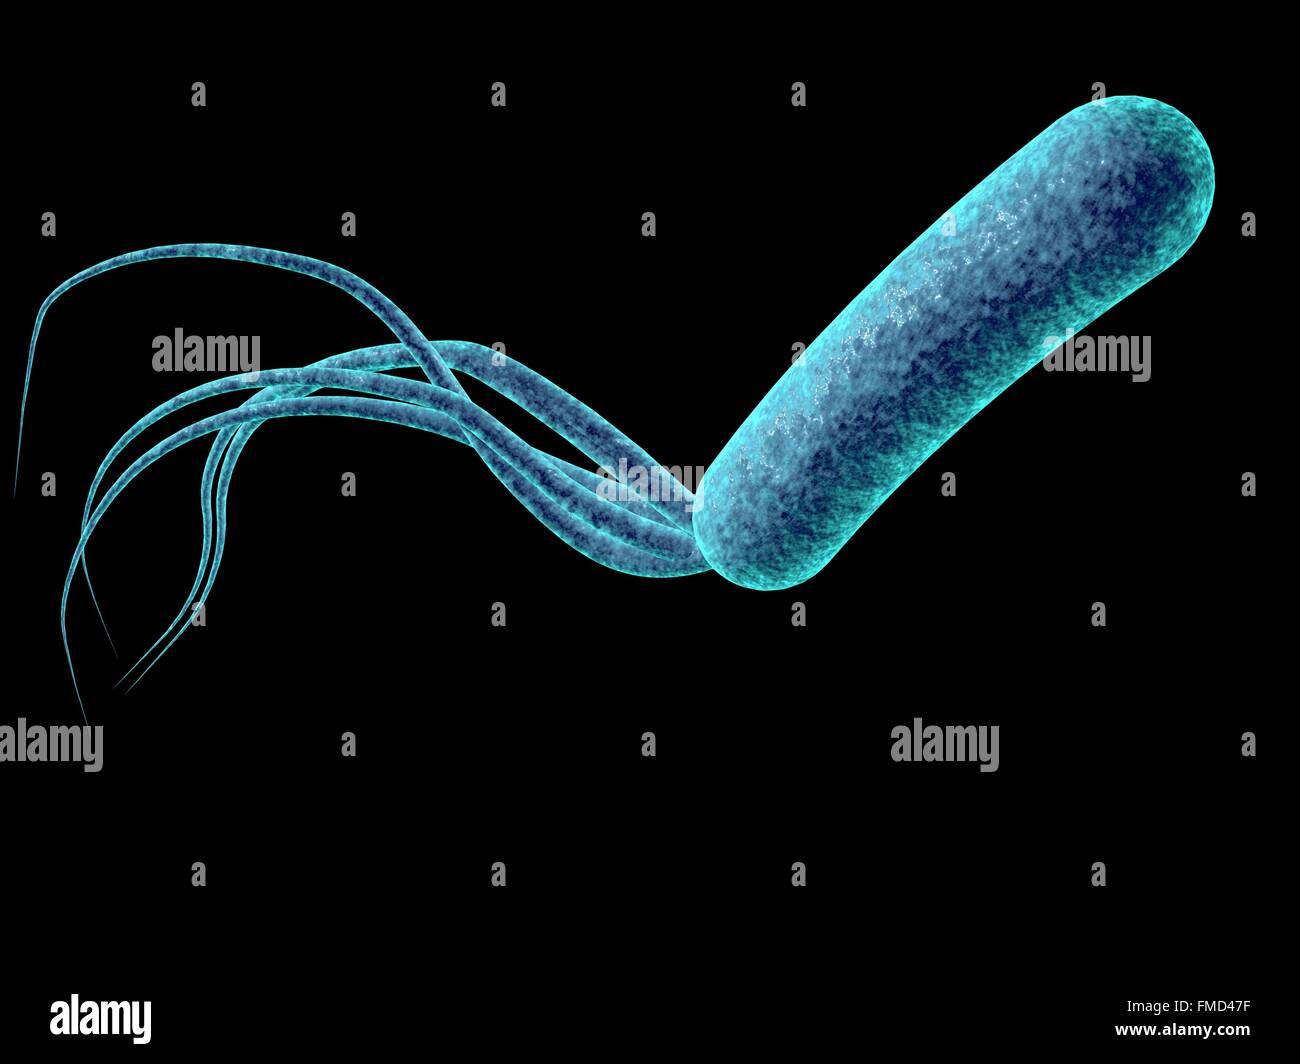 Бактерия синегнойная палочка. Псеудомонас бактерия. Псевдомонада ауригиноза. Бактерия псевдомонас аэругиноза что это.